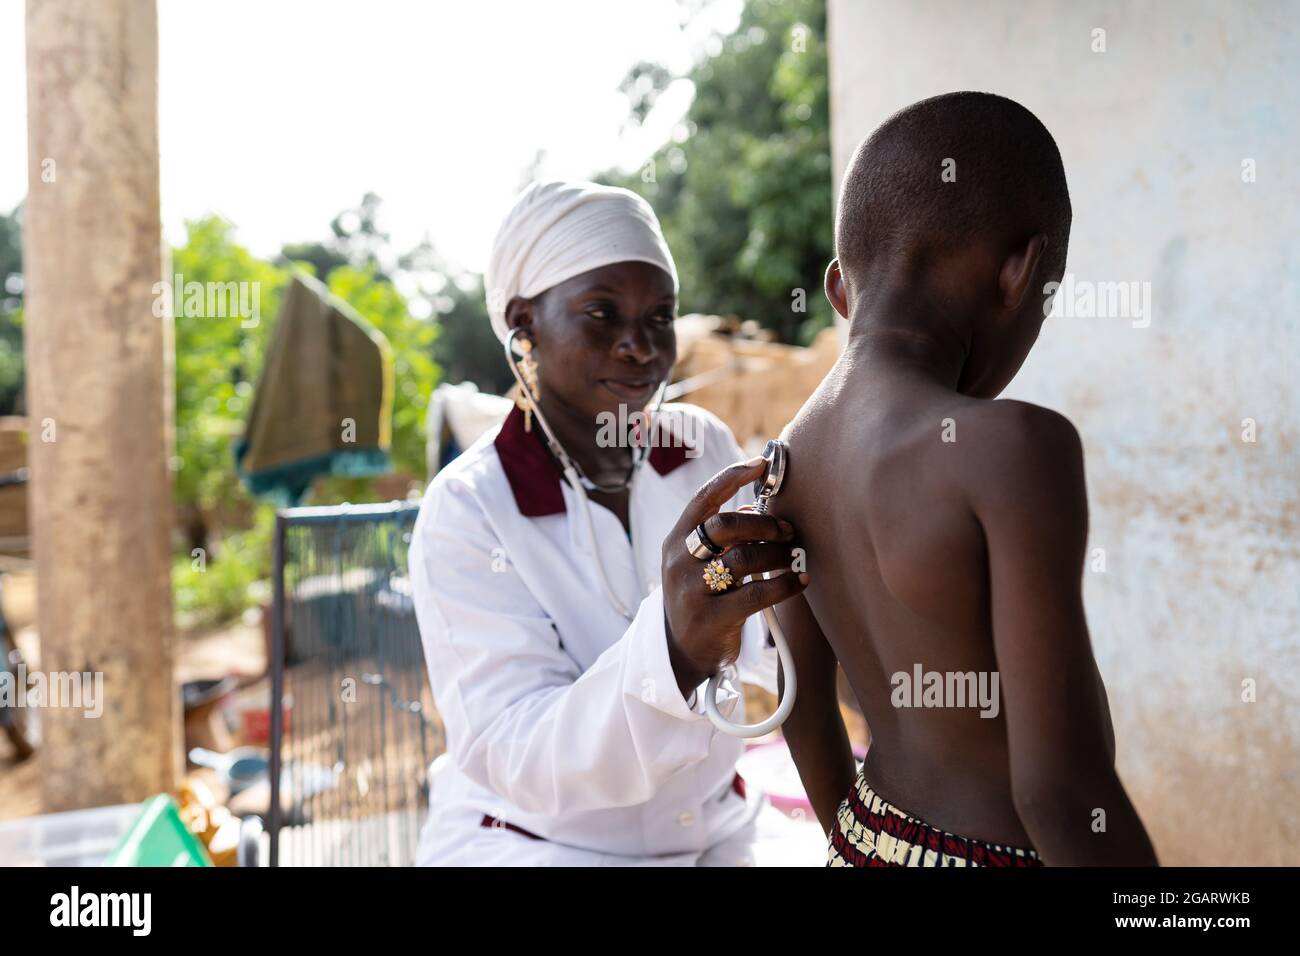 In questa immagine, un pediatra sta visitando una famiglia di villaggi africani per verificare lo stato di salute generale di un ragazzo nero malato con un sospetto infe Foto Stock